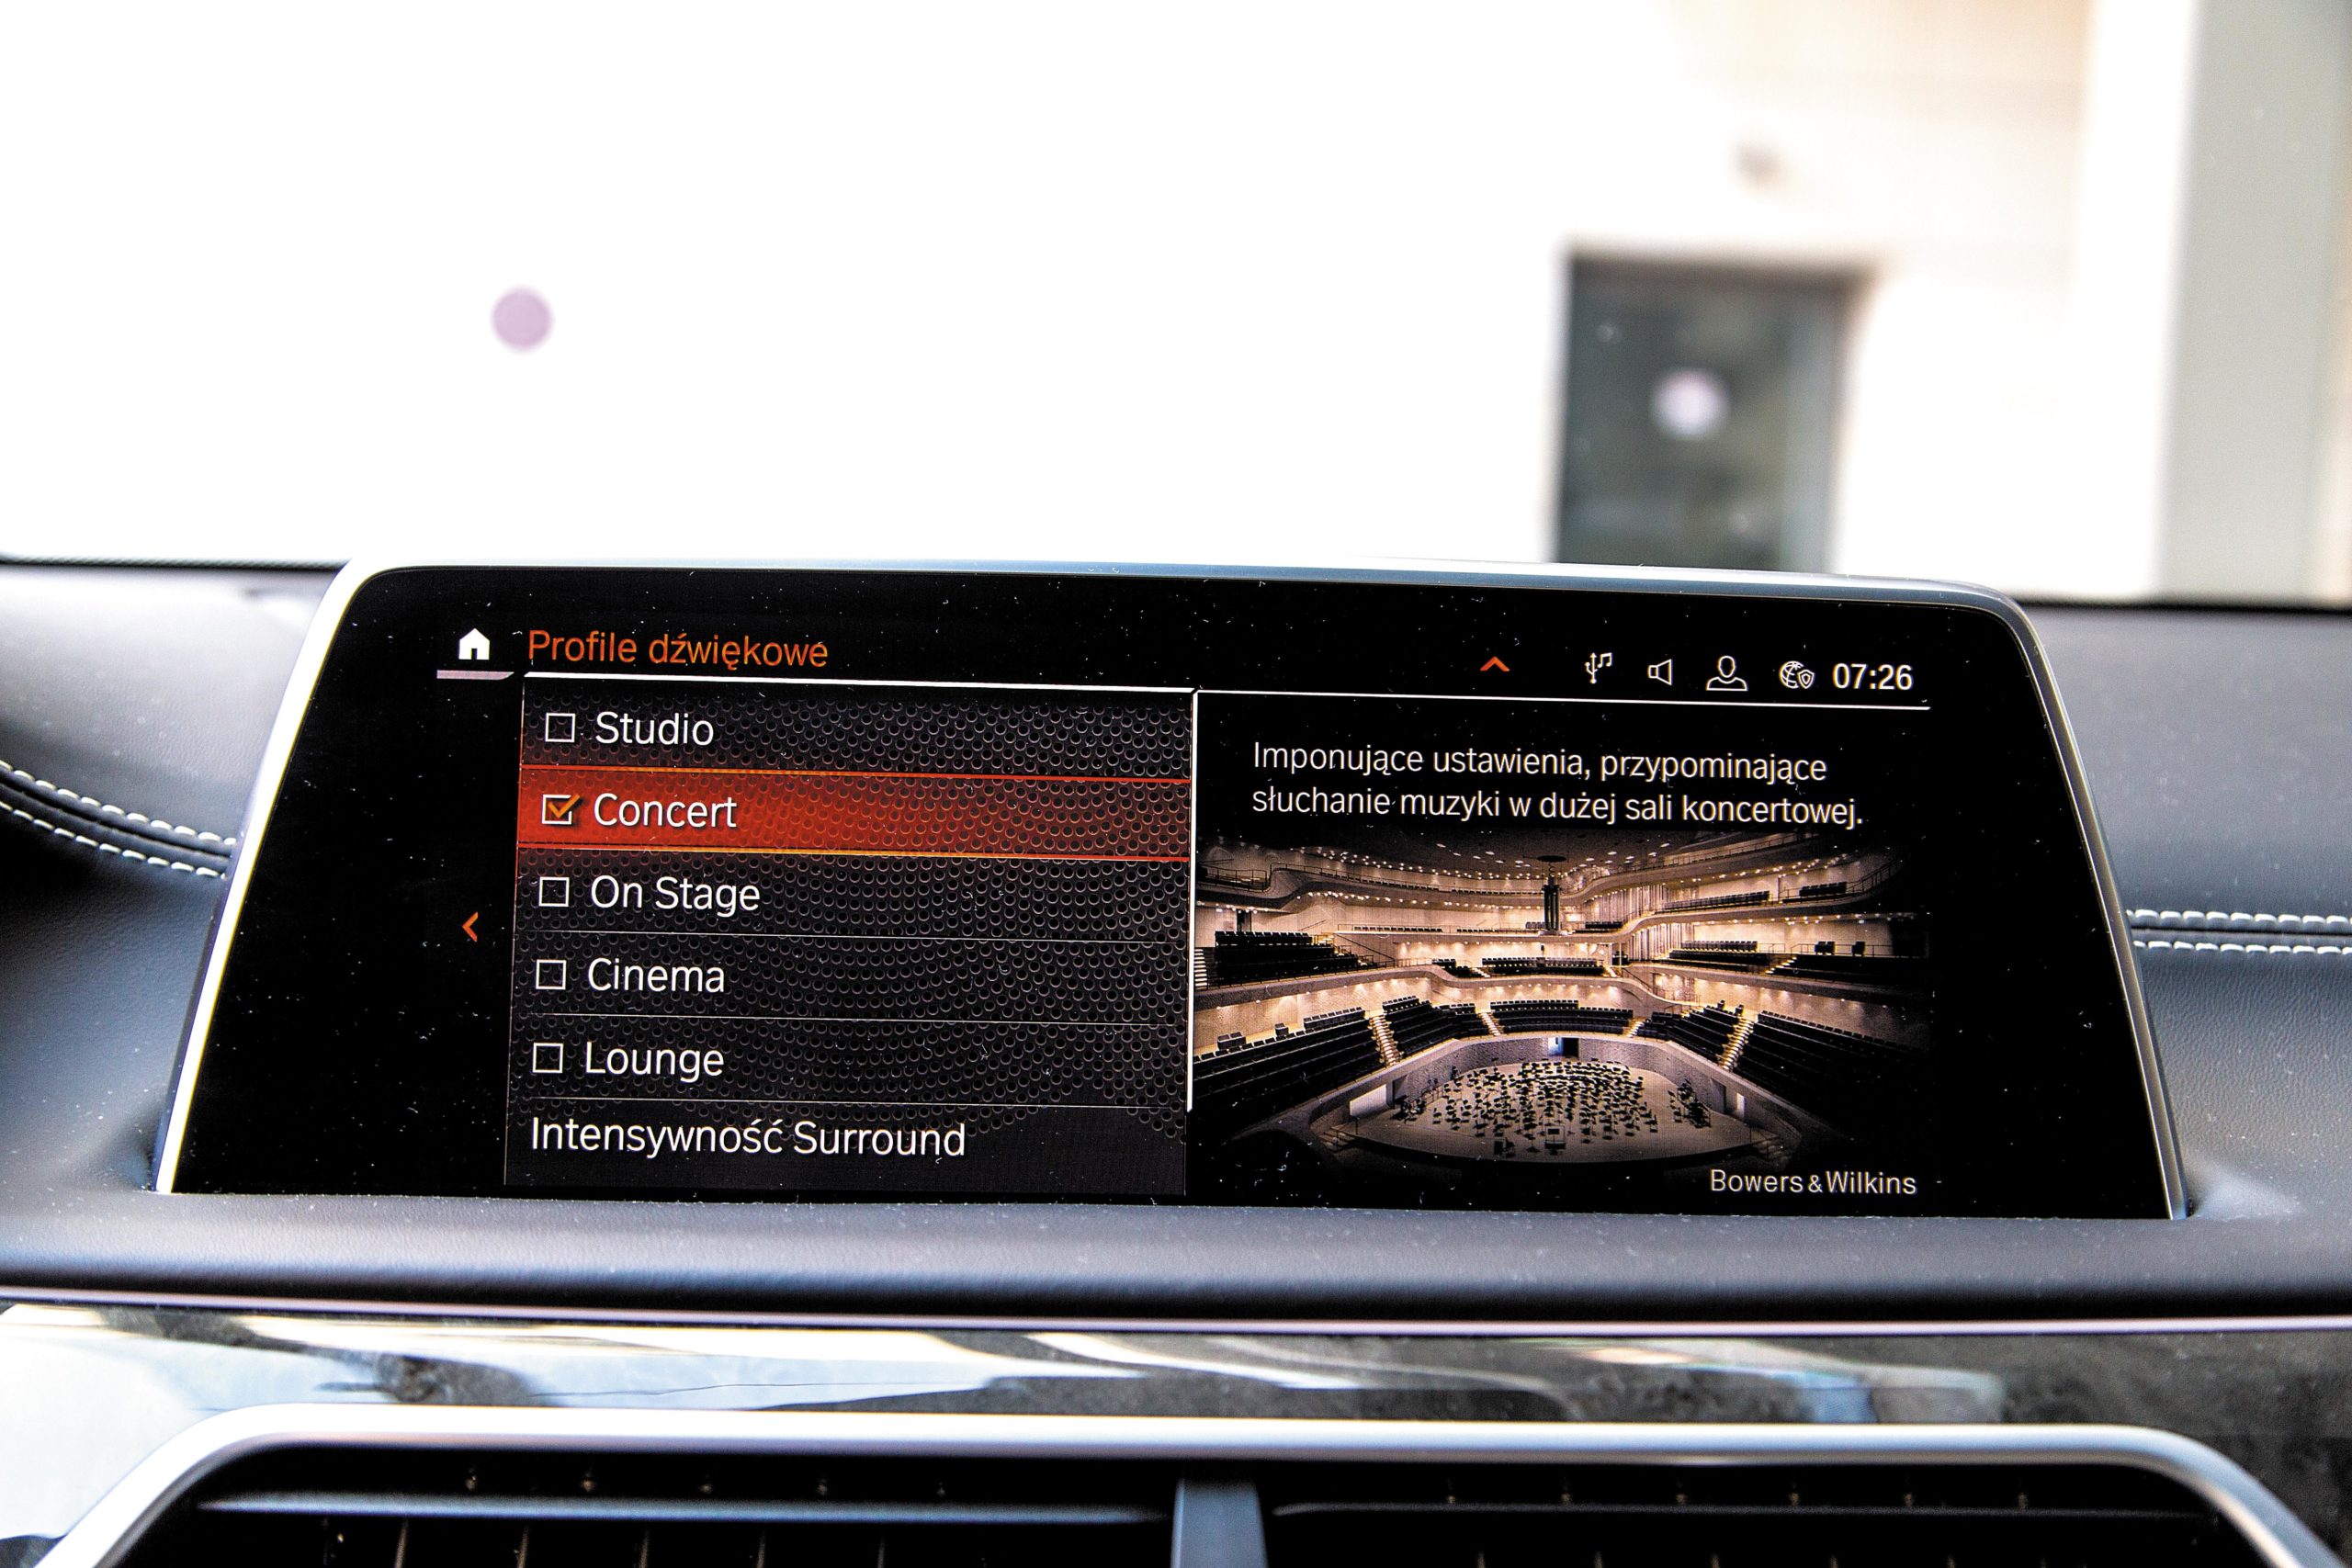 BMW 750i G11 profile dźwiękowe na wyświetlaczu